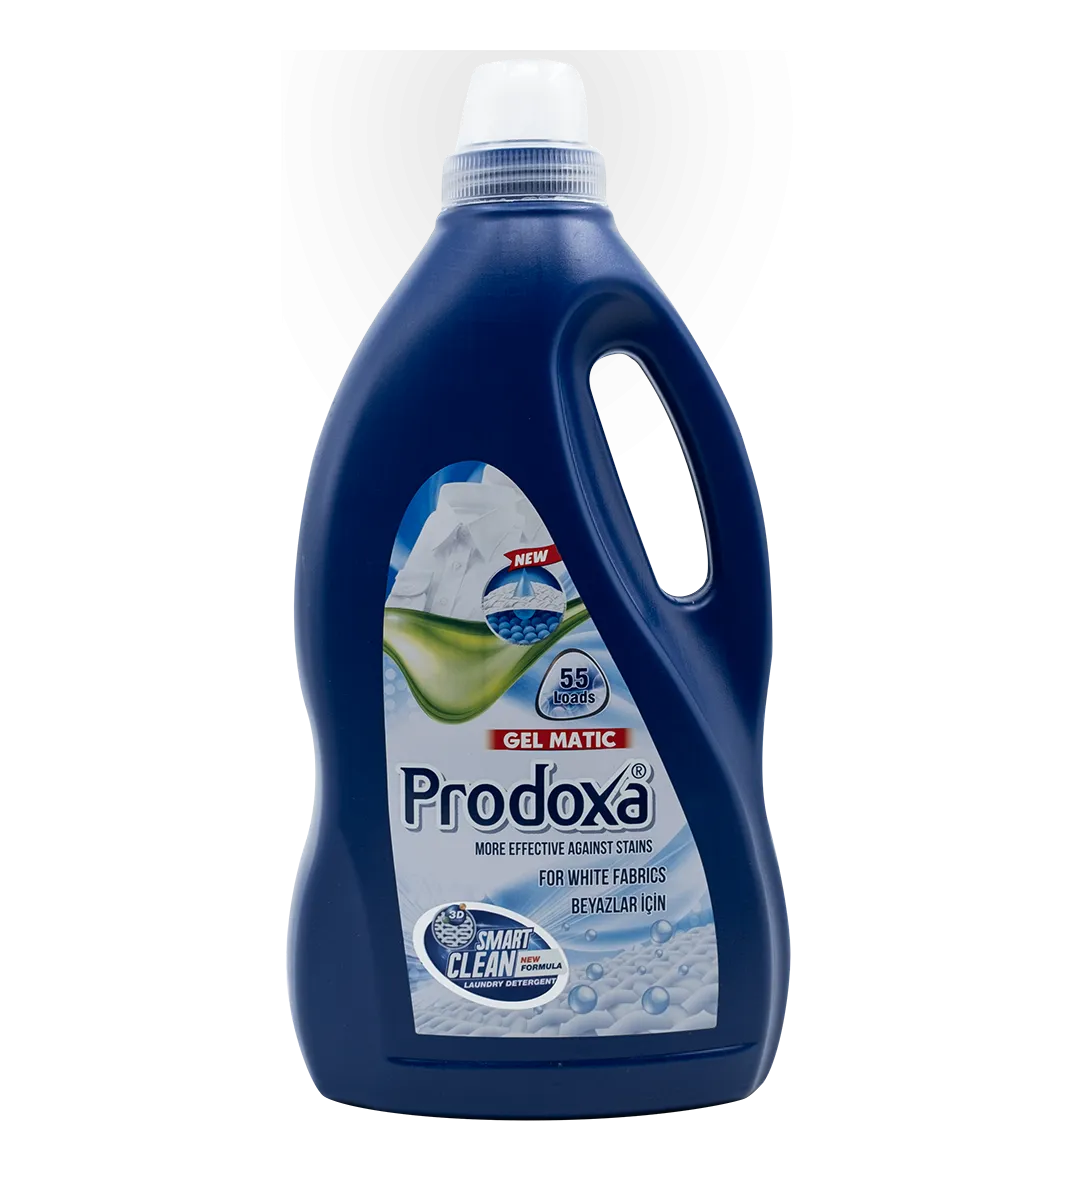 Prodoxa 3 Lt Laundry Detergent For White